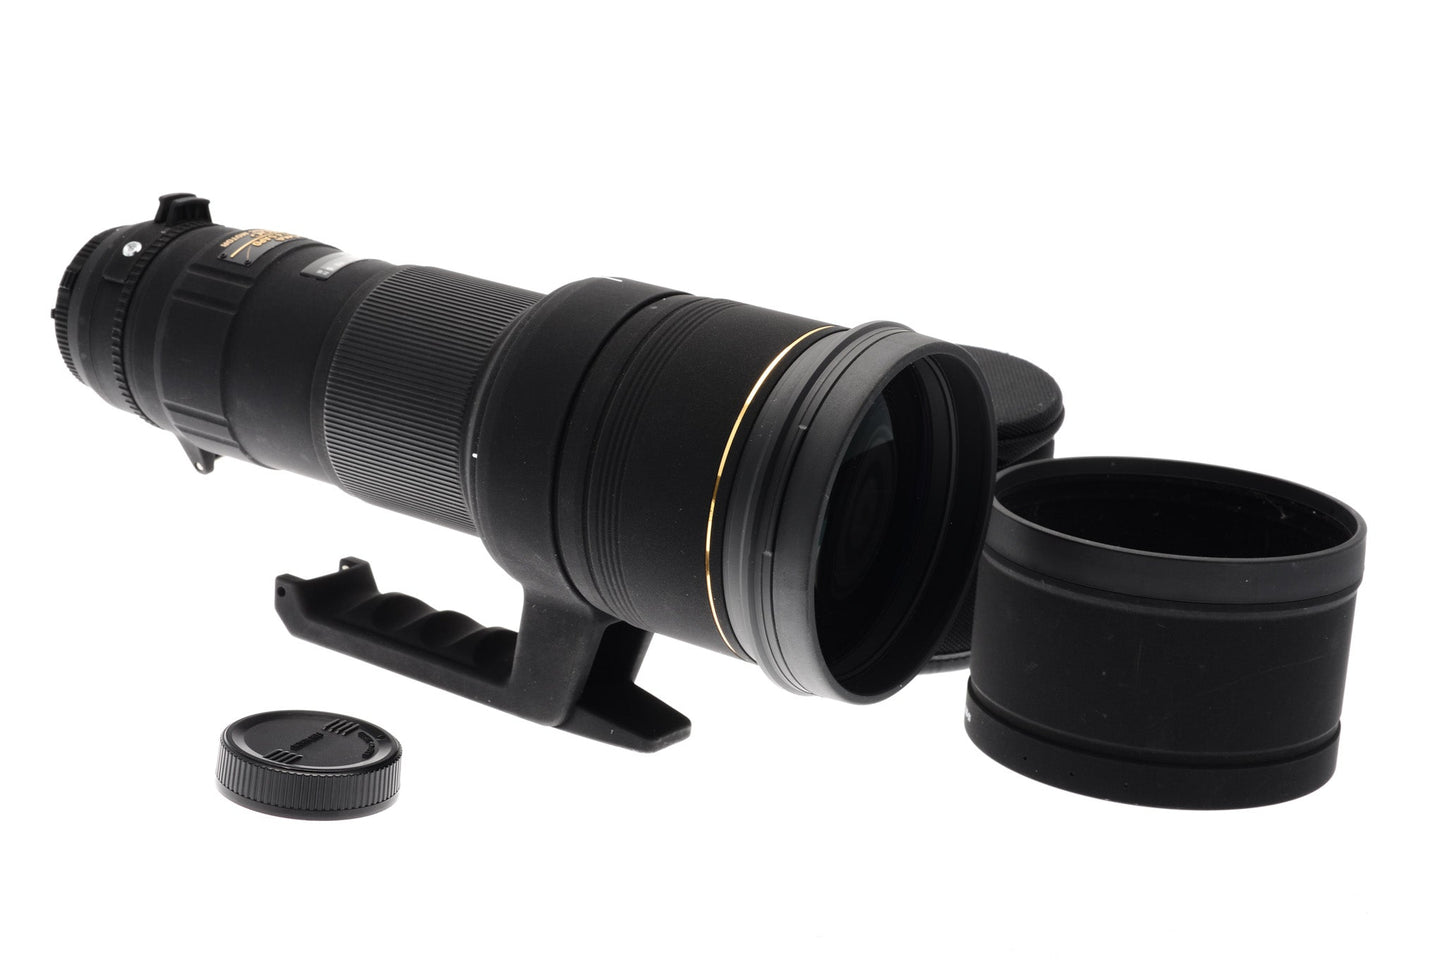 Sigma 500mm f4.5 APO EX DG HSM - Lens